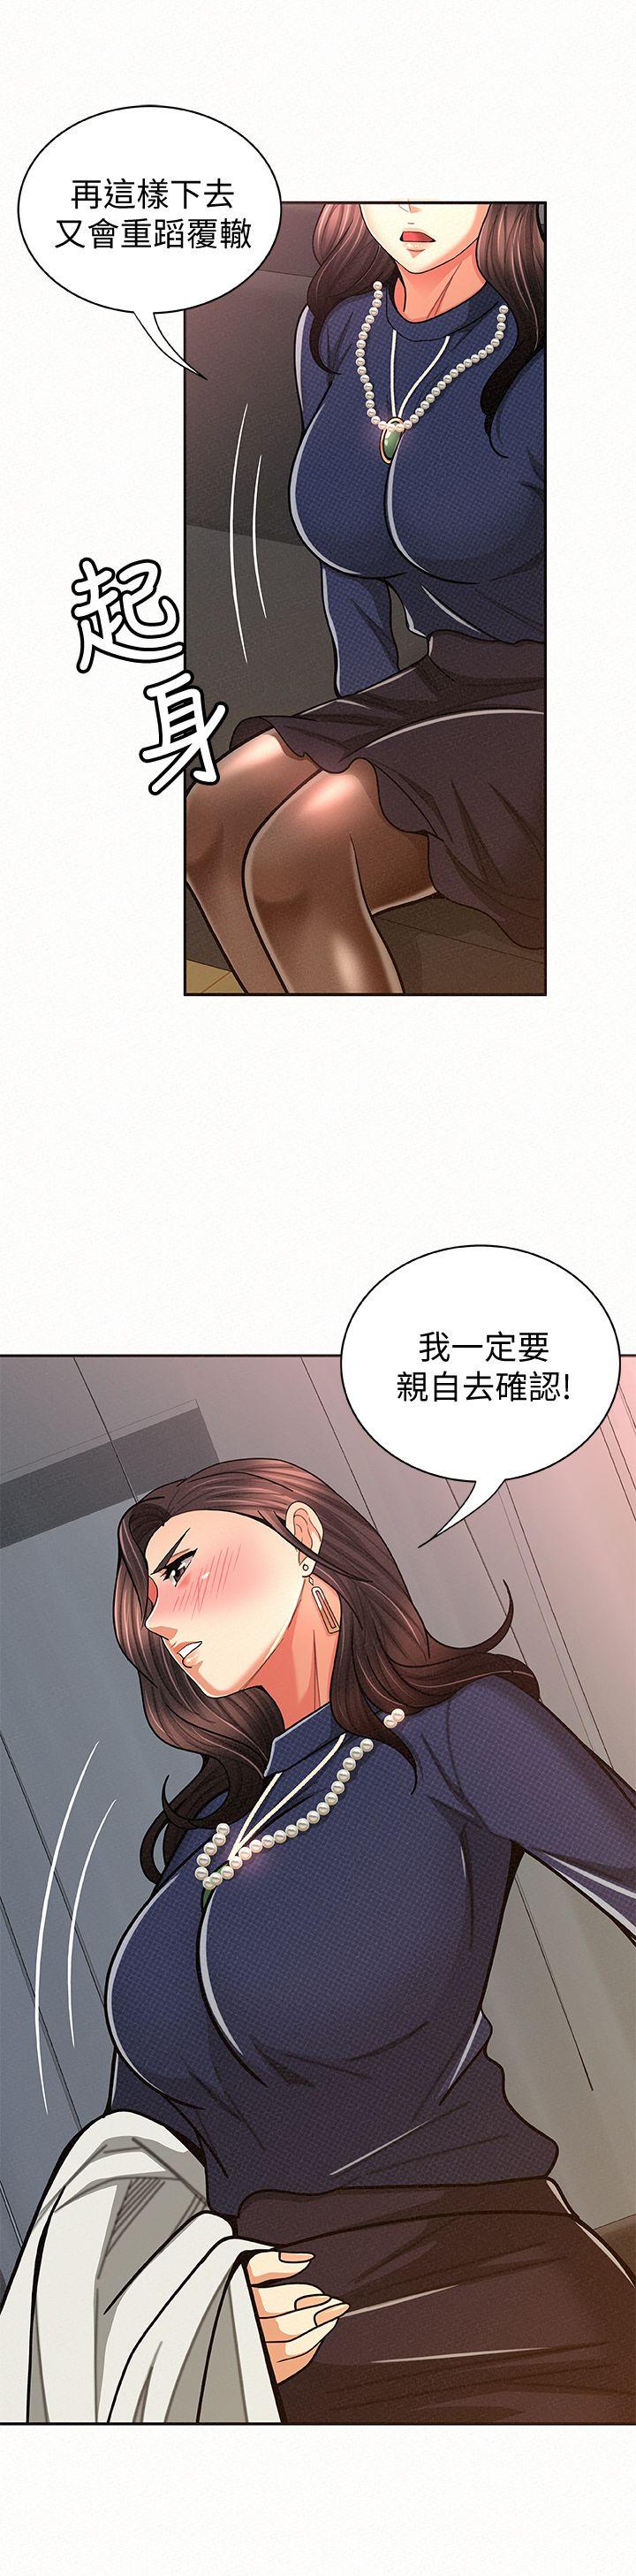 韩国污漫画 報告夫人 第19话-夫人突如其来的拜访 5